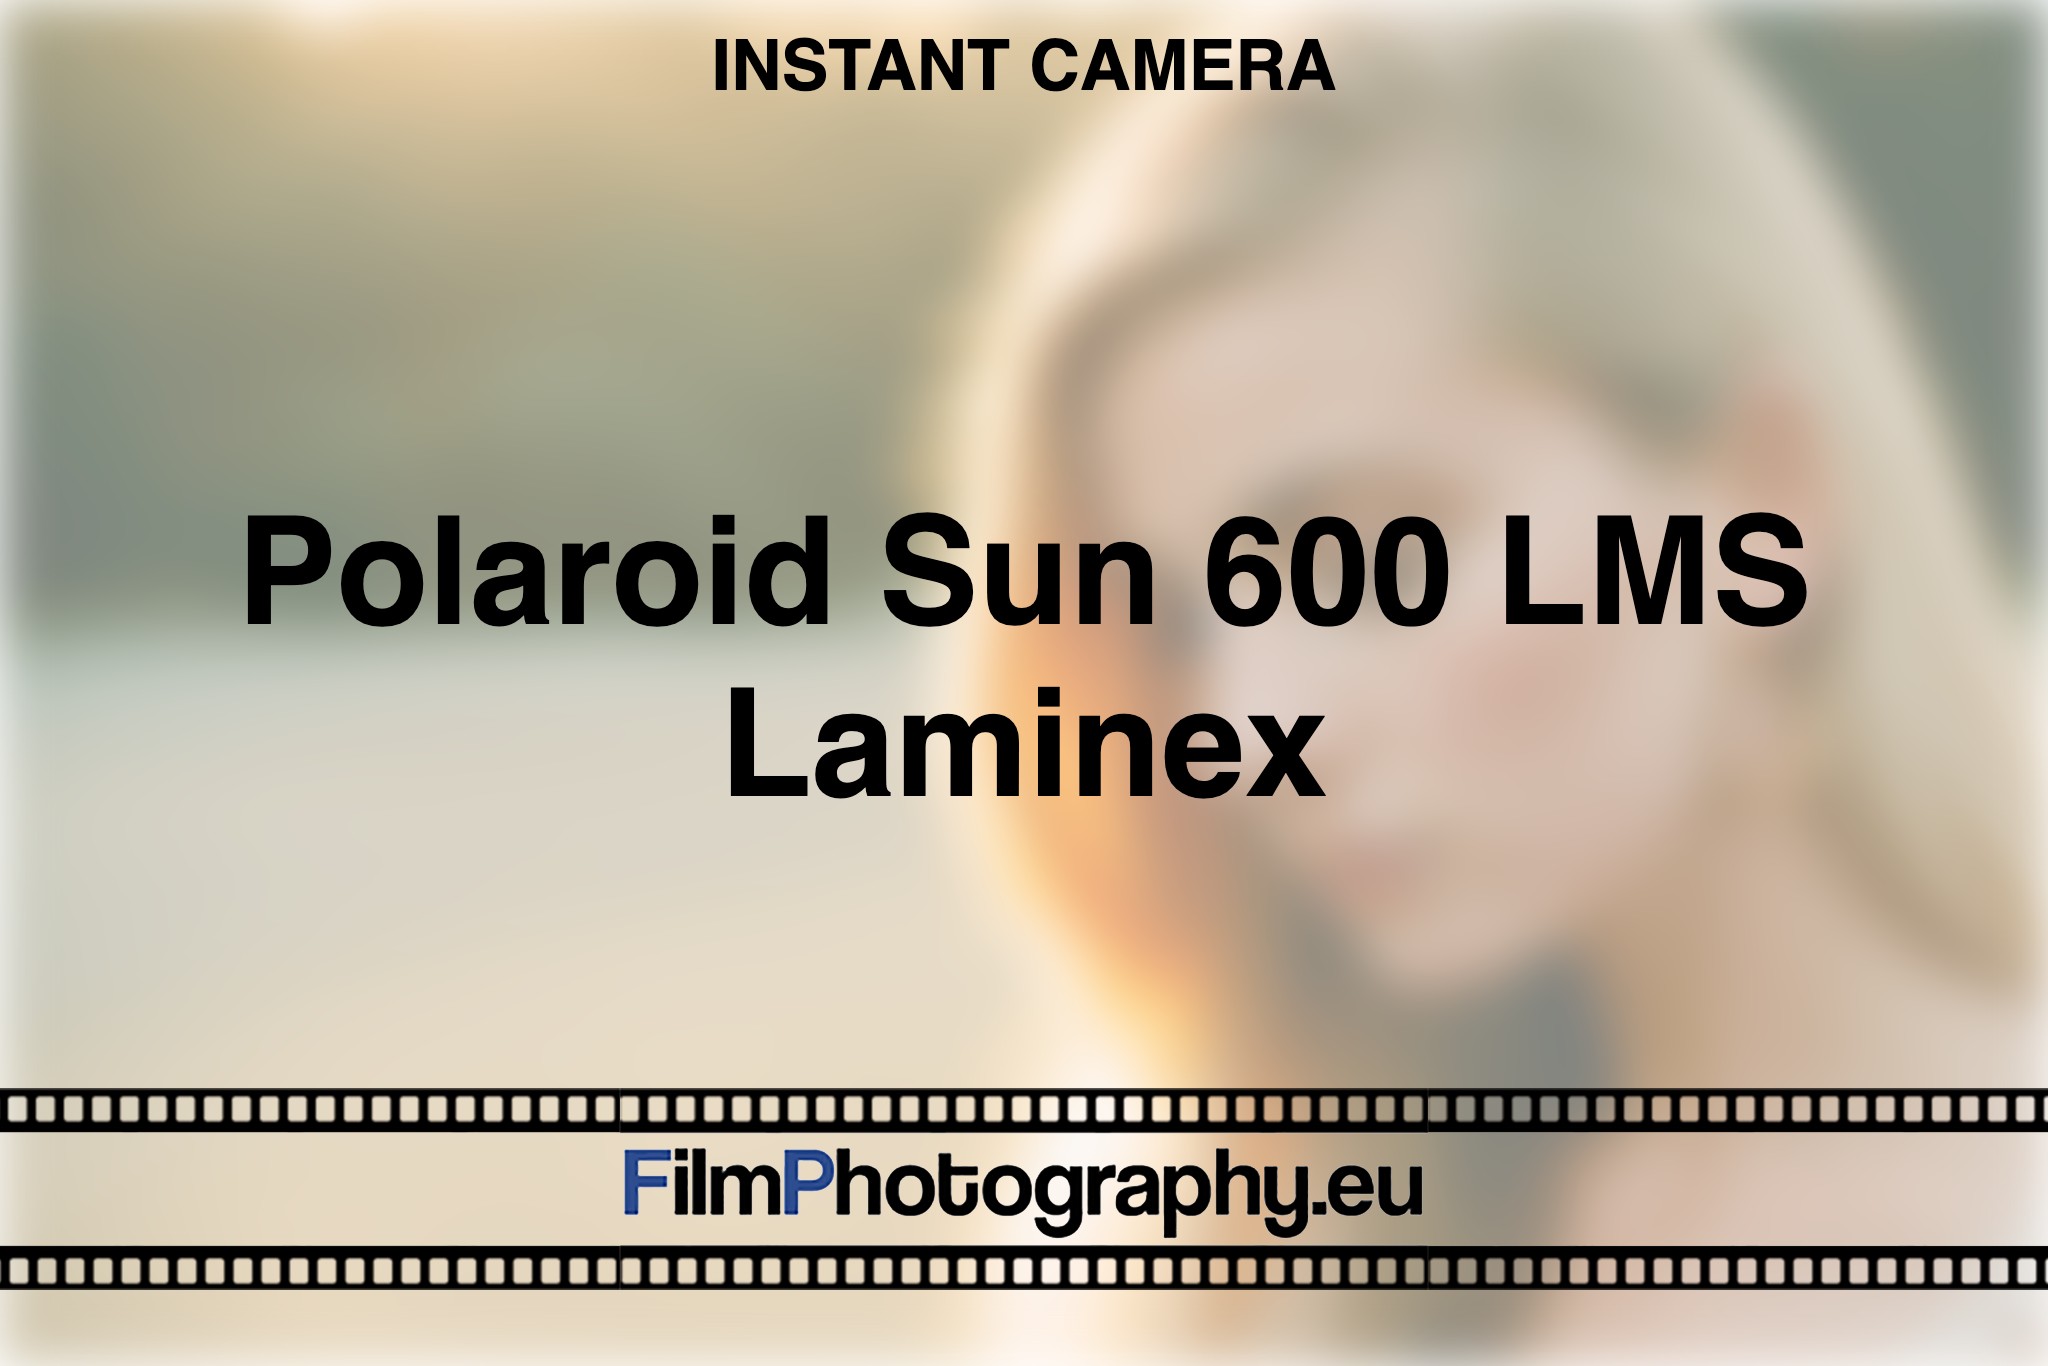 polaroid-sun-600-lms-laminex-instant-camera-bnv